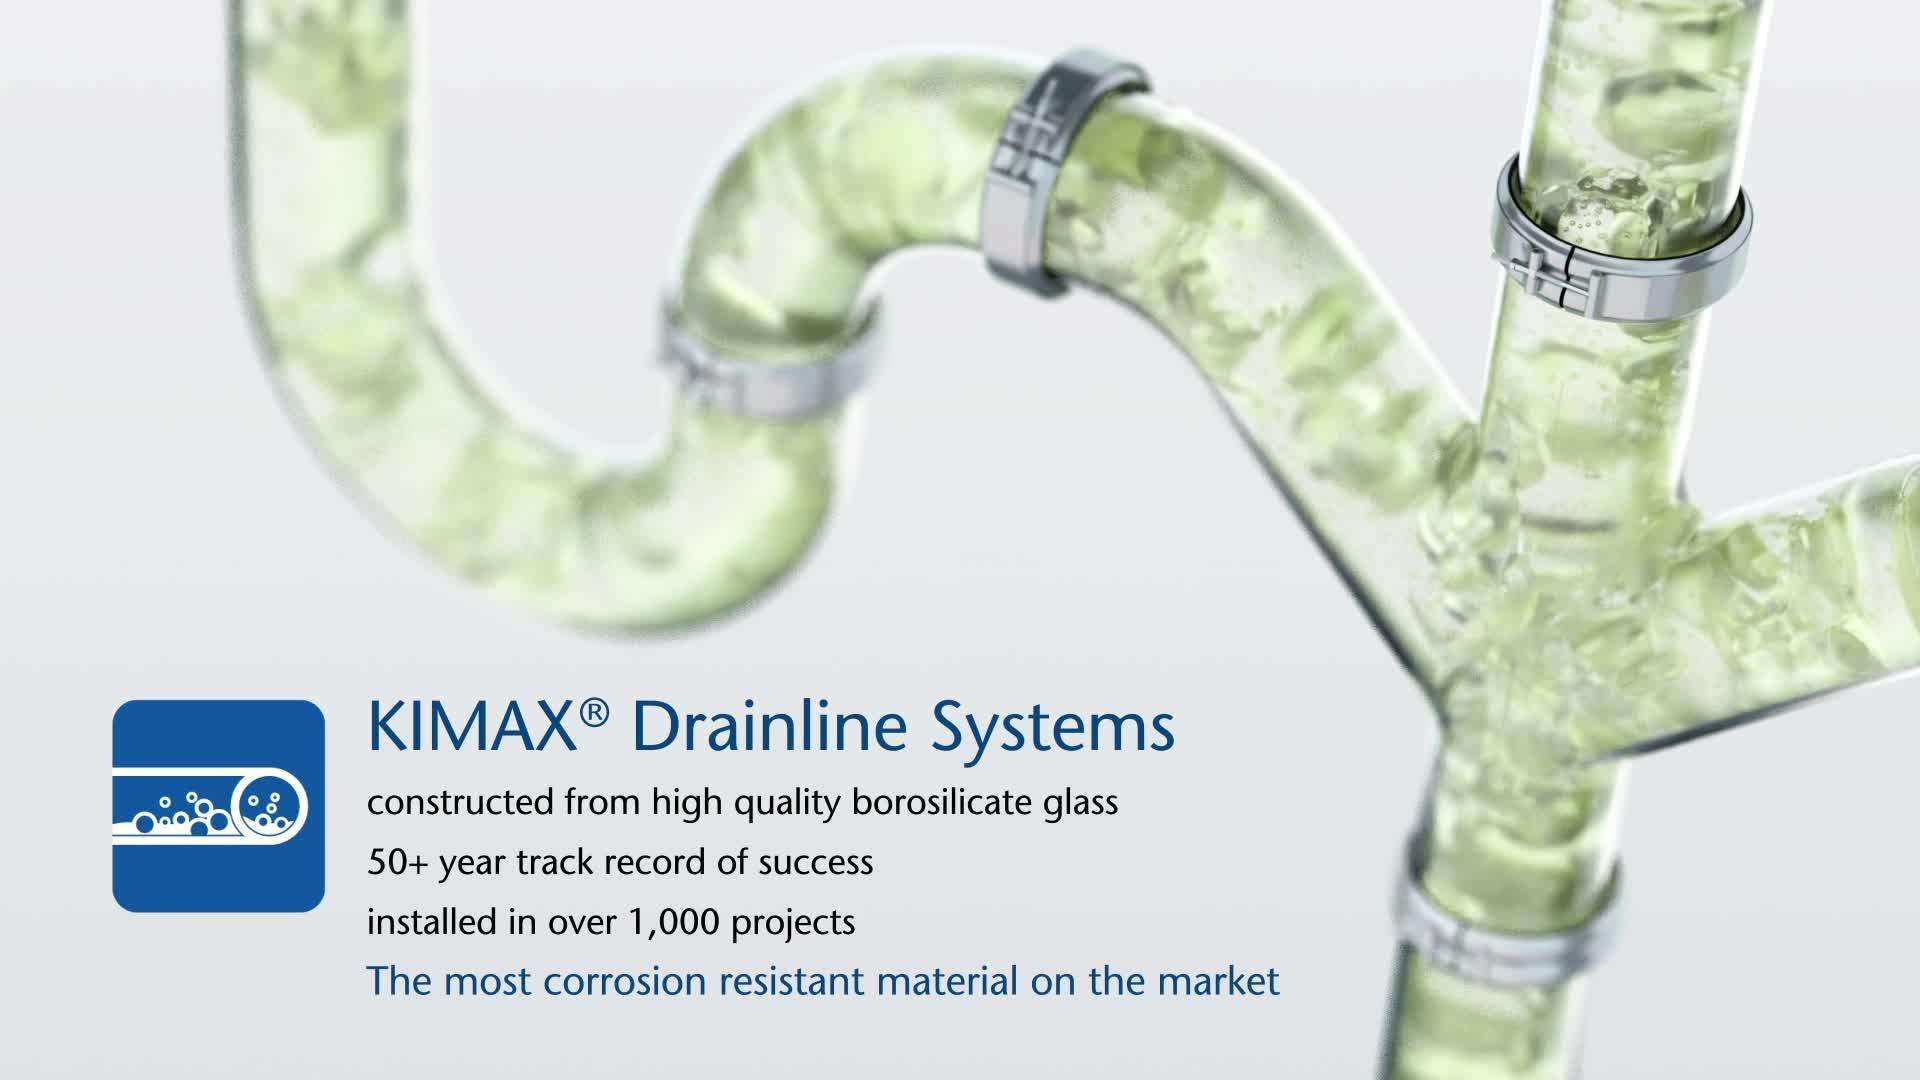 La animación muestra la resistencia a la corrosión de una línea de drenaje de vidrio KIMAX® en comparación con una polimérica.